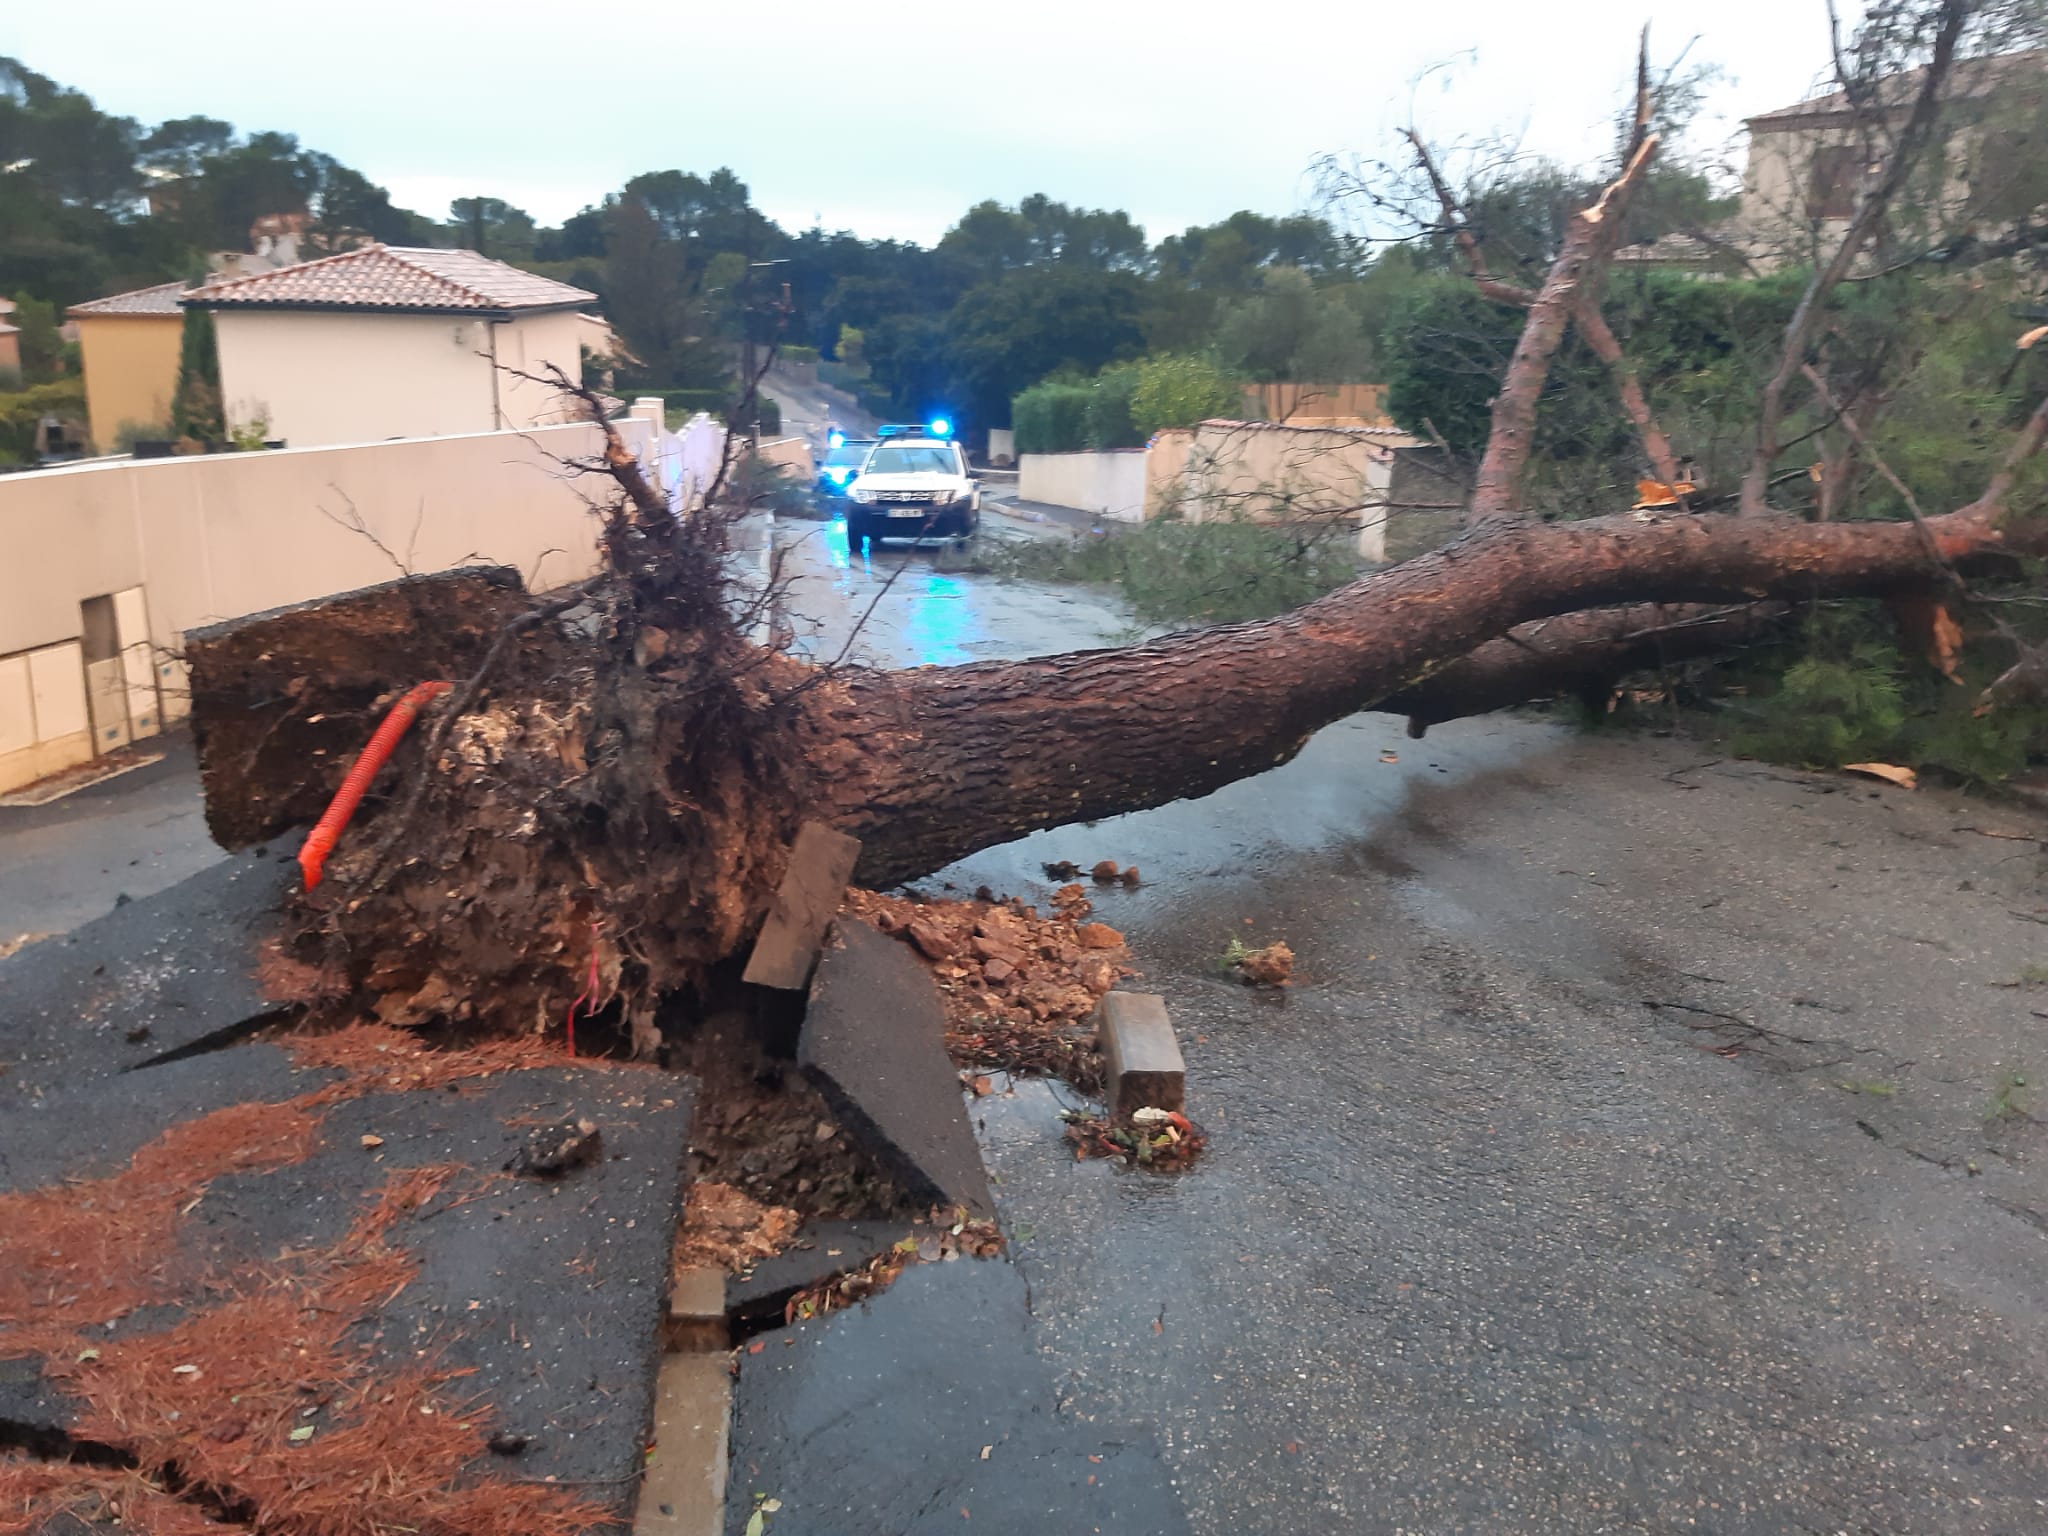 La tornade a notamment déraciné des arbres. Facebook/Commune de POULX Officiel